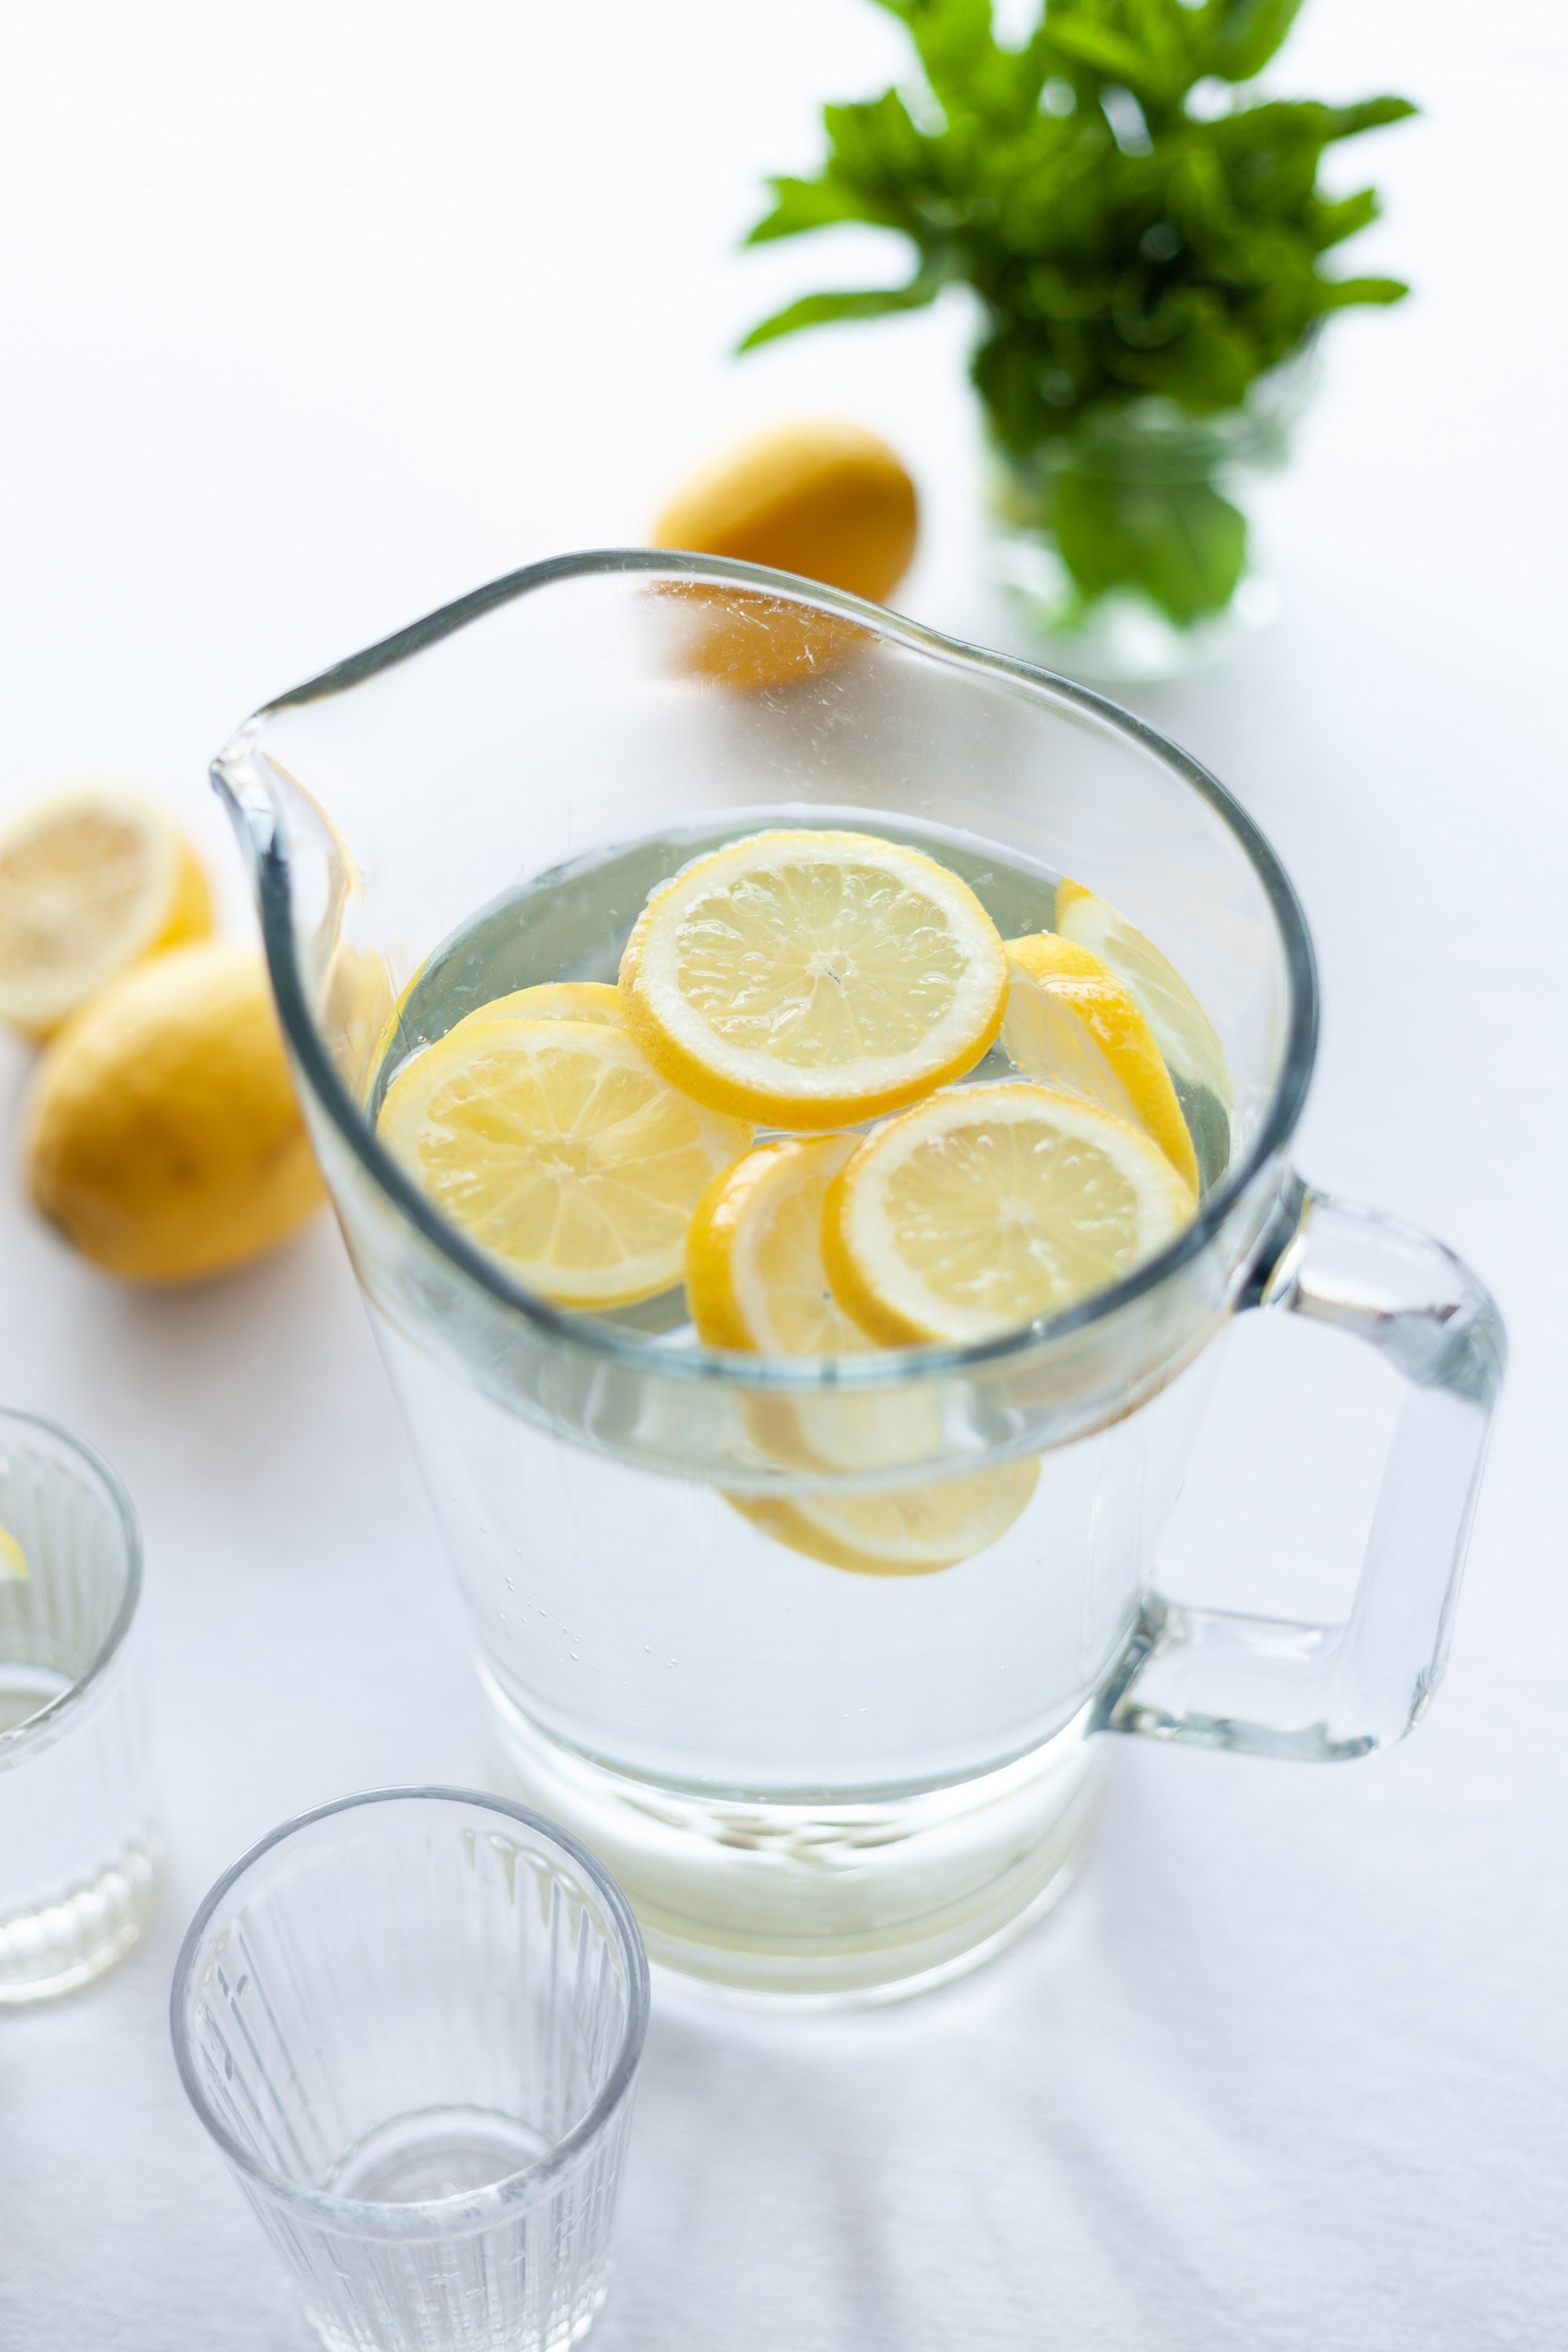 7 manières dont votre corps bénéficie de l'eau citronnée